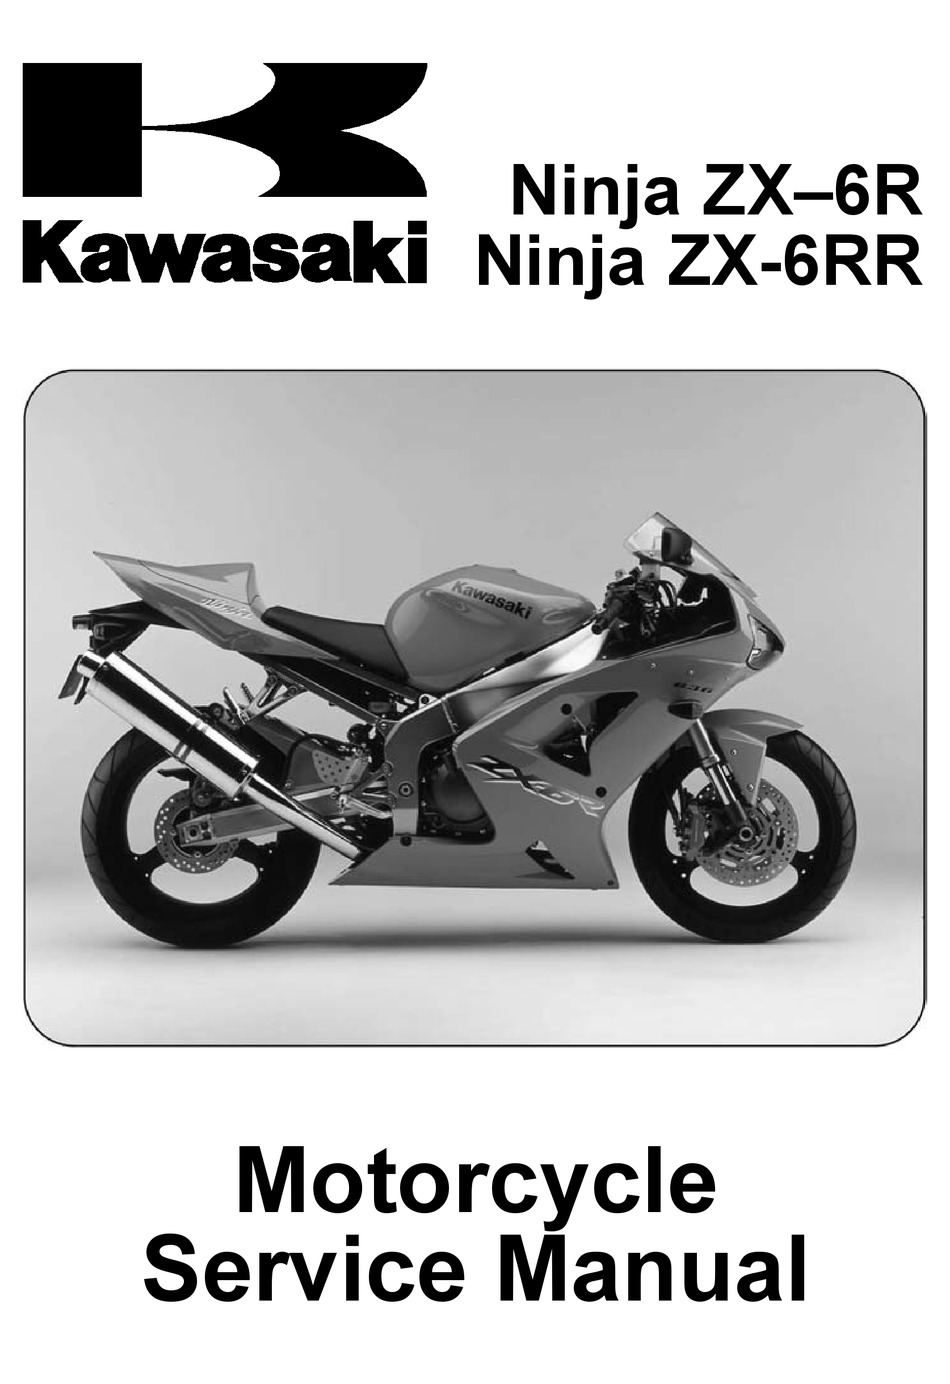 kawasaki Ninja ZX-6R 2005-2006 Service Repair Workshop Maintenance Manual 